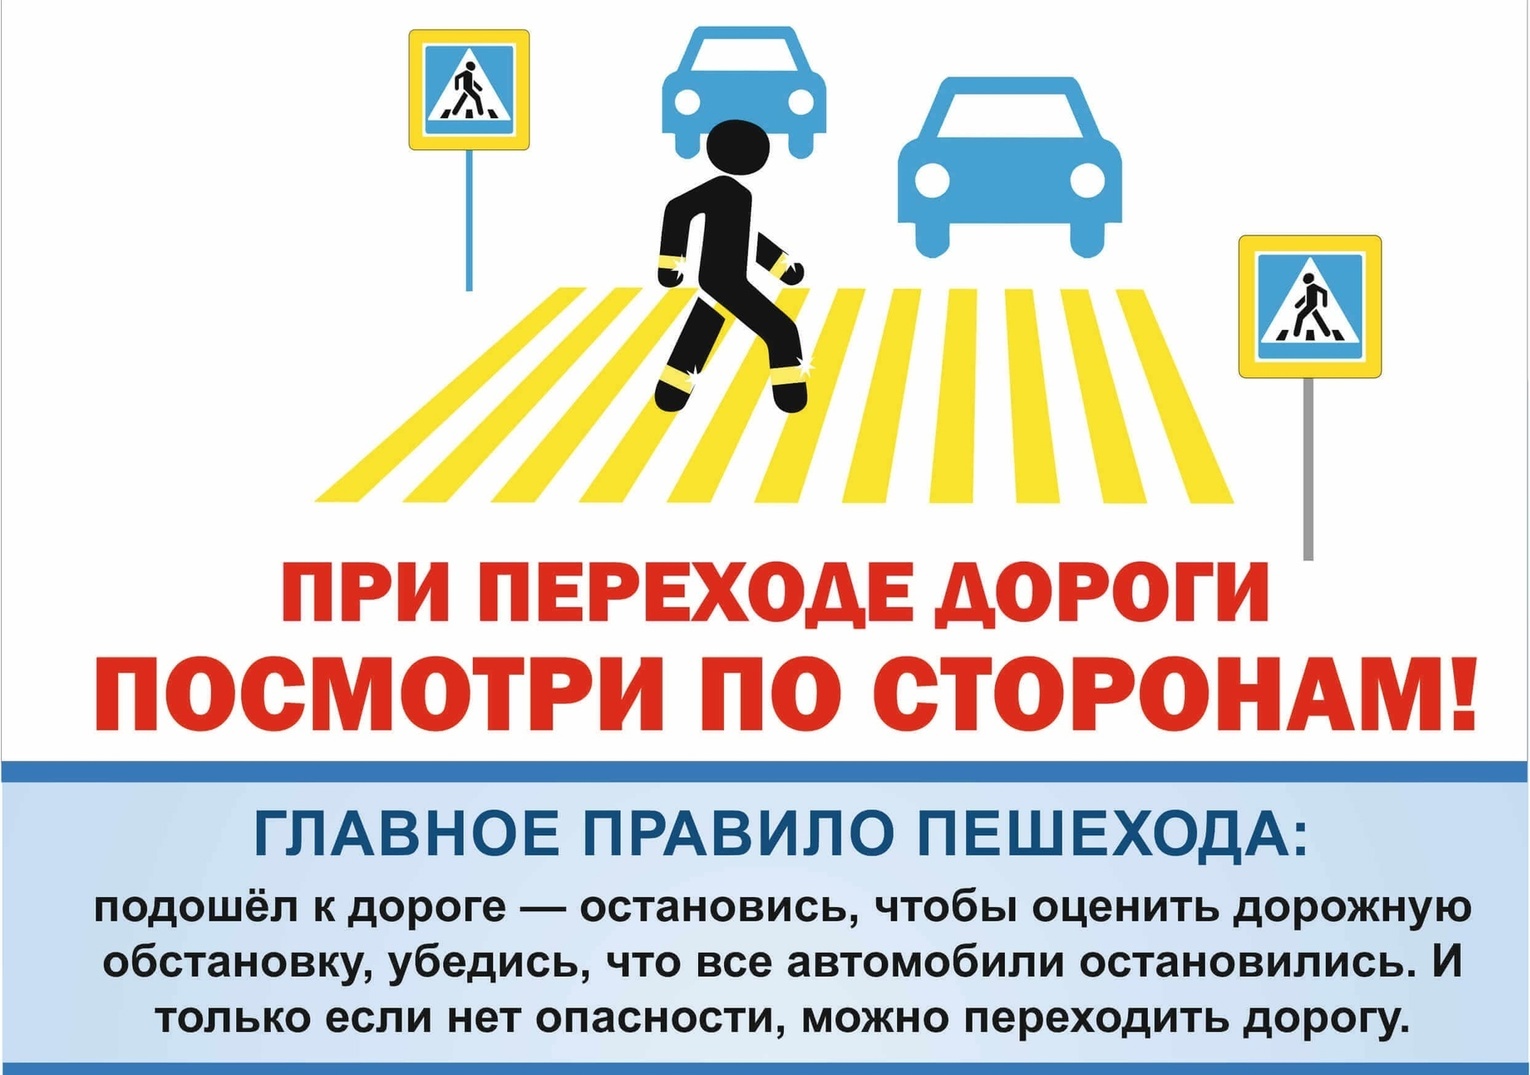 Повторяем основные правила для пешеходов при переходе проезжей части по пешеходному переходу.